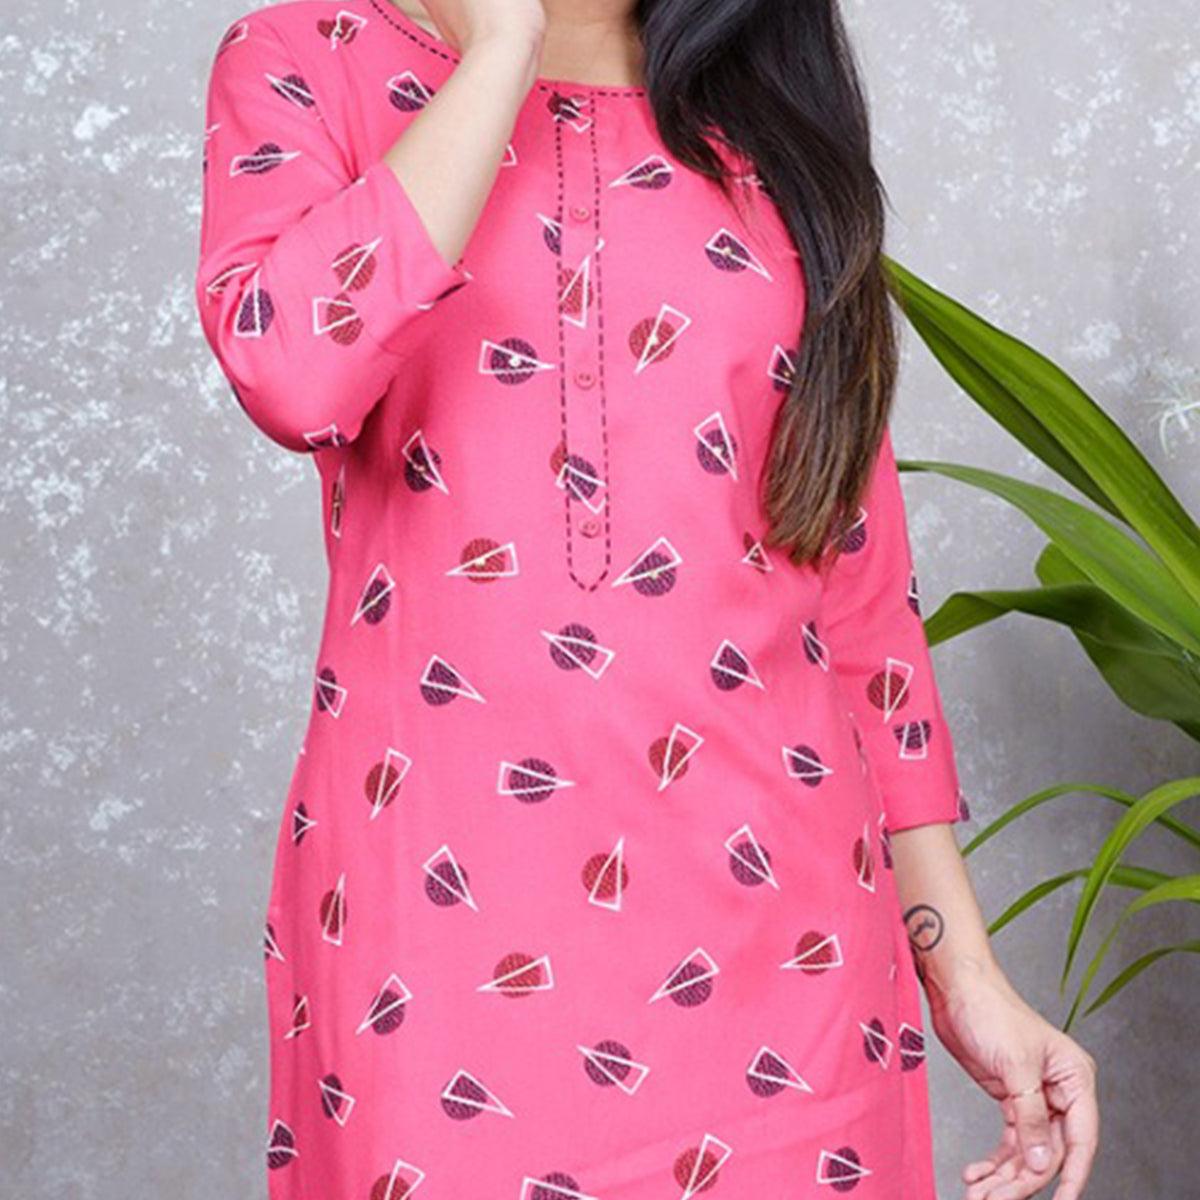 Aariya Designs - Pink Colored Casual Wear Geometric Printed Rayon Kurti - Peachmode